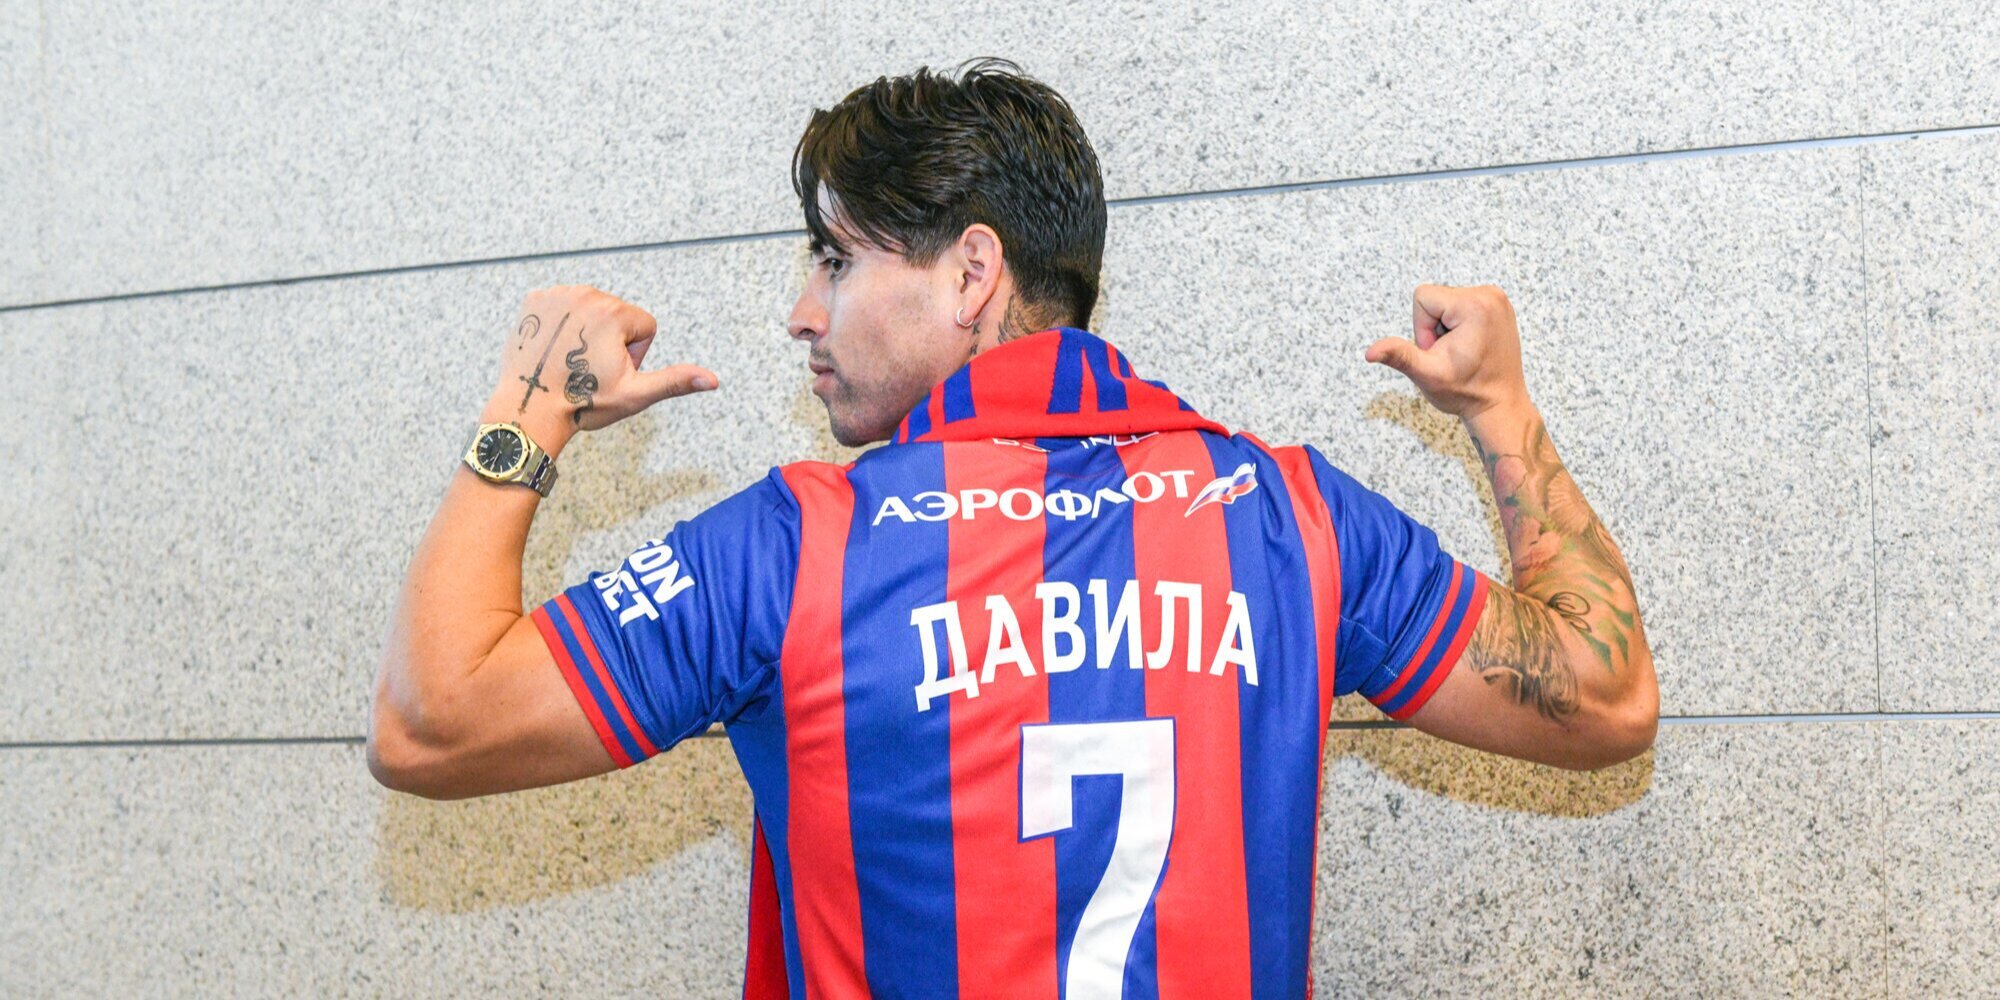 ЦСКА подтвердил переход чилийского форварда Давилы